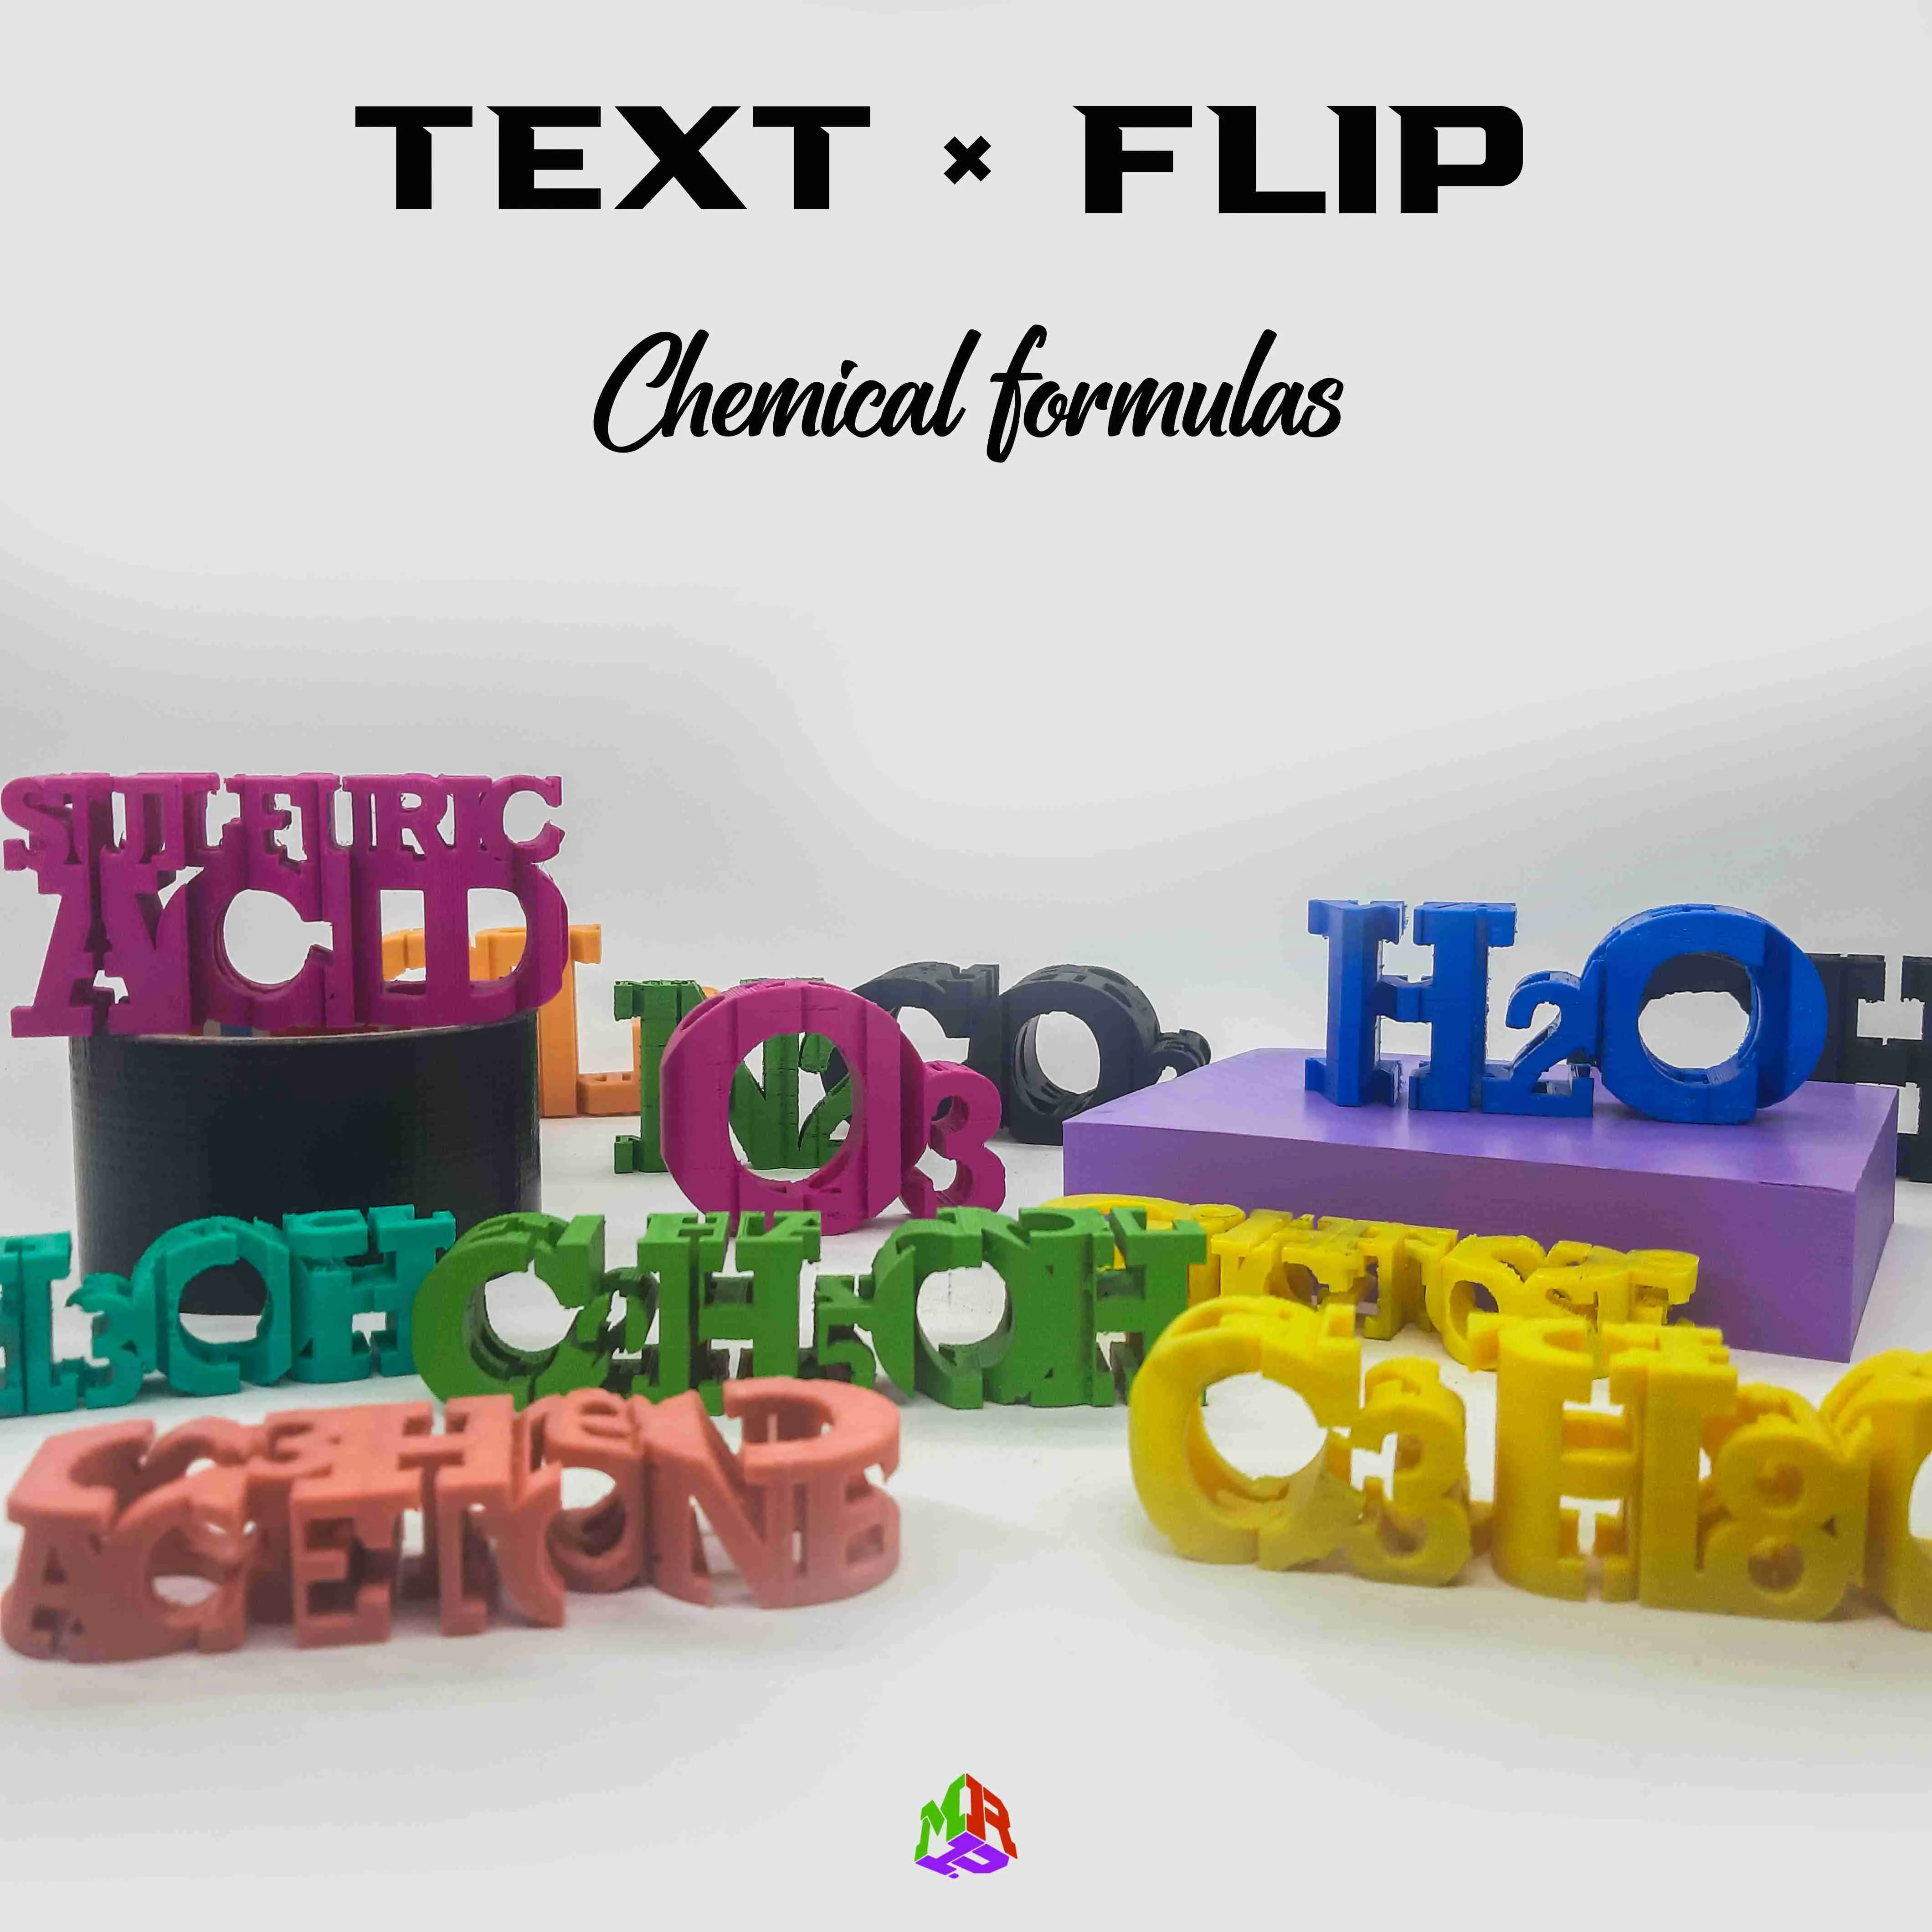 Text Flip - C11H15O2 (MDMA)